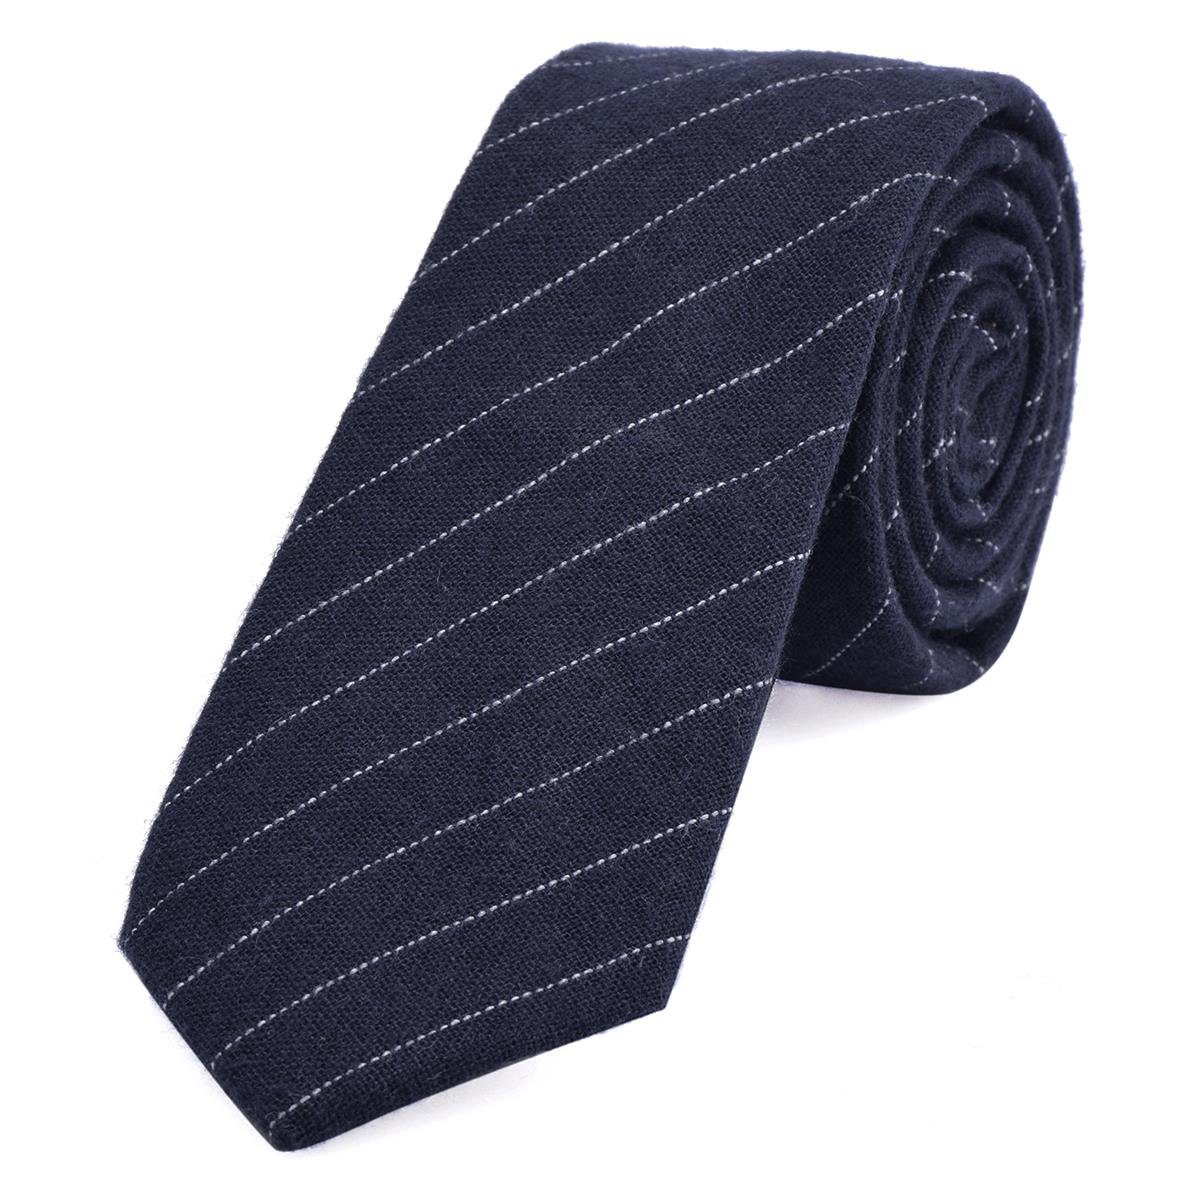 DonDon Krawatte Herren Krawatte 6 cm mit Karos oder Streifen (Packung, 1-St., 1x Krawatte) Baumwolle, kariert oder gestreift, für Büro oder festliche Veranstaltungen dunkelblau gestreift